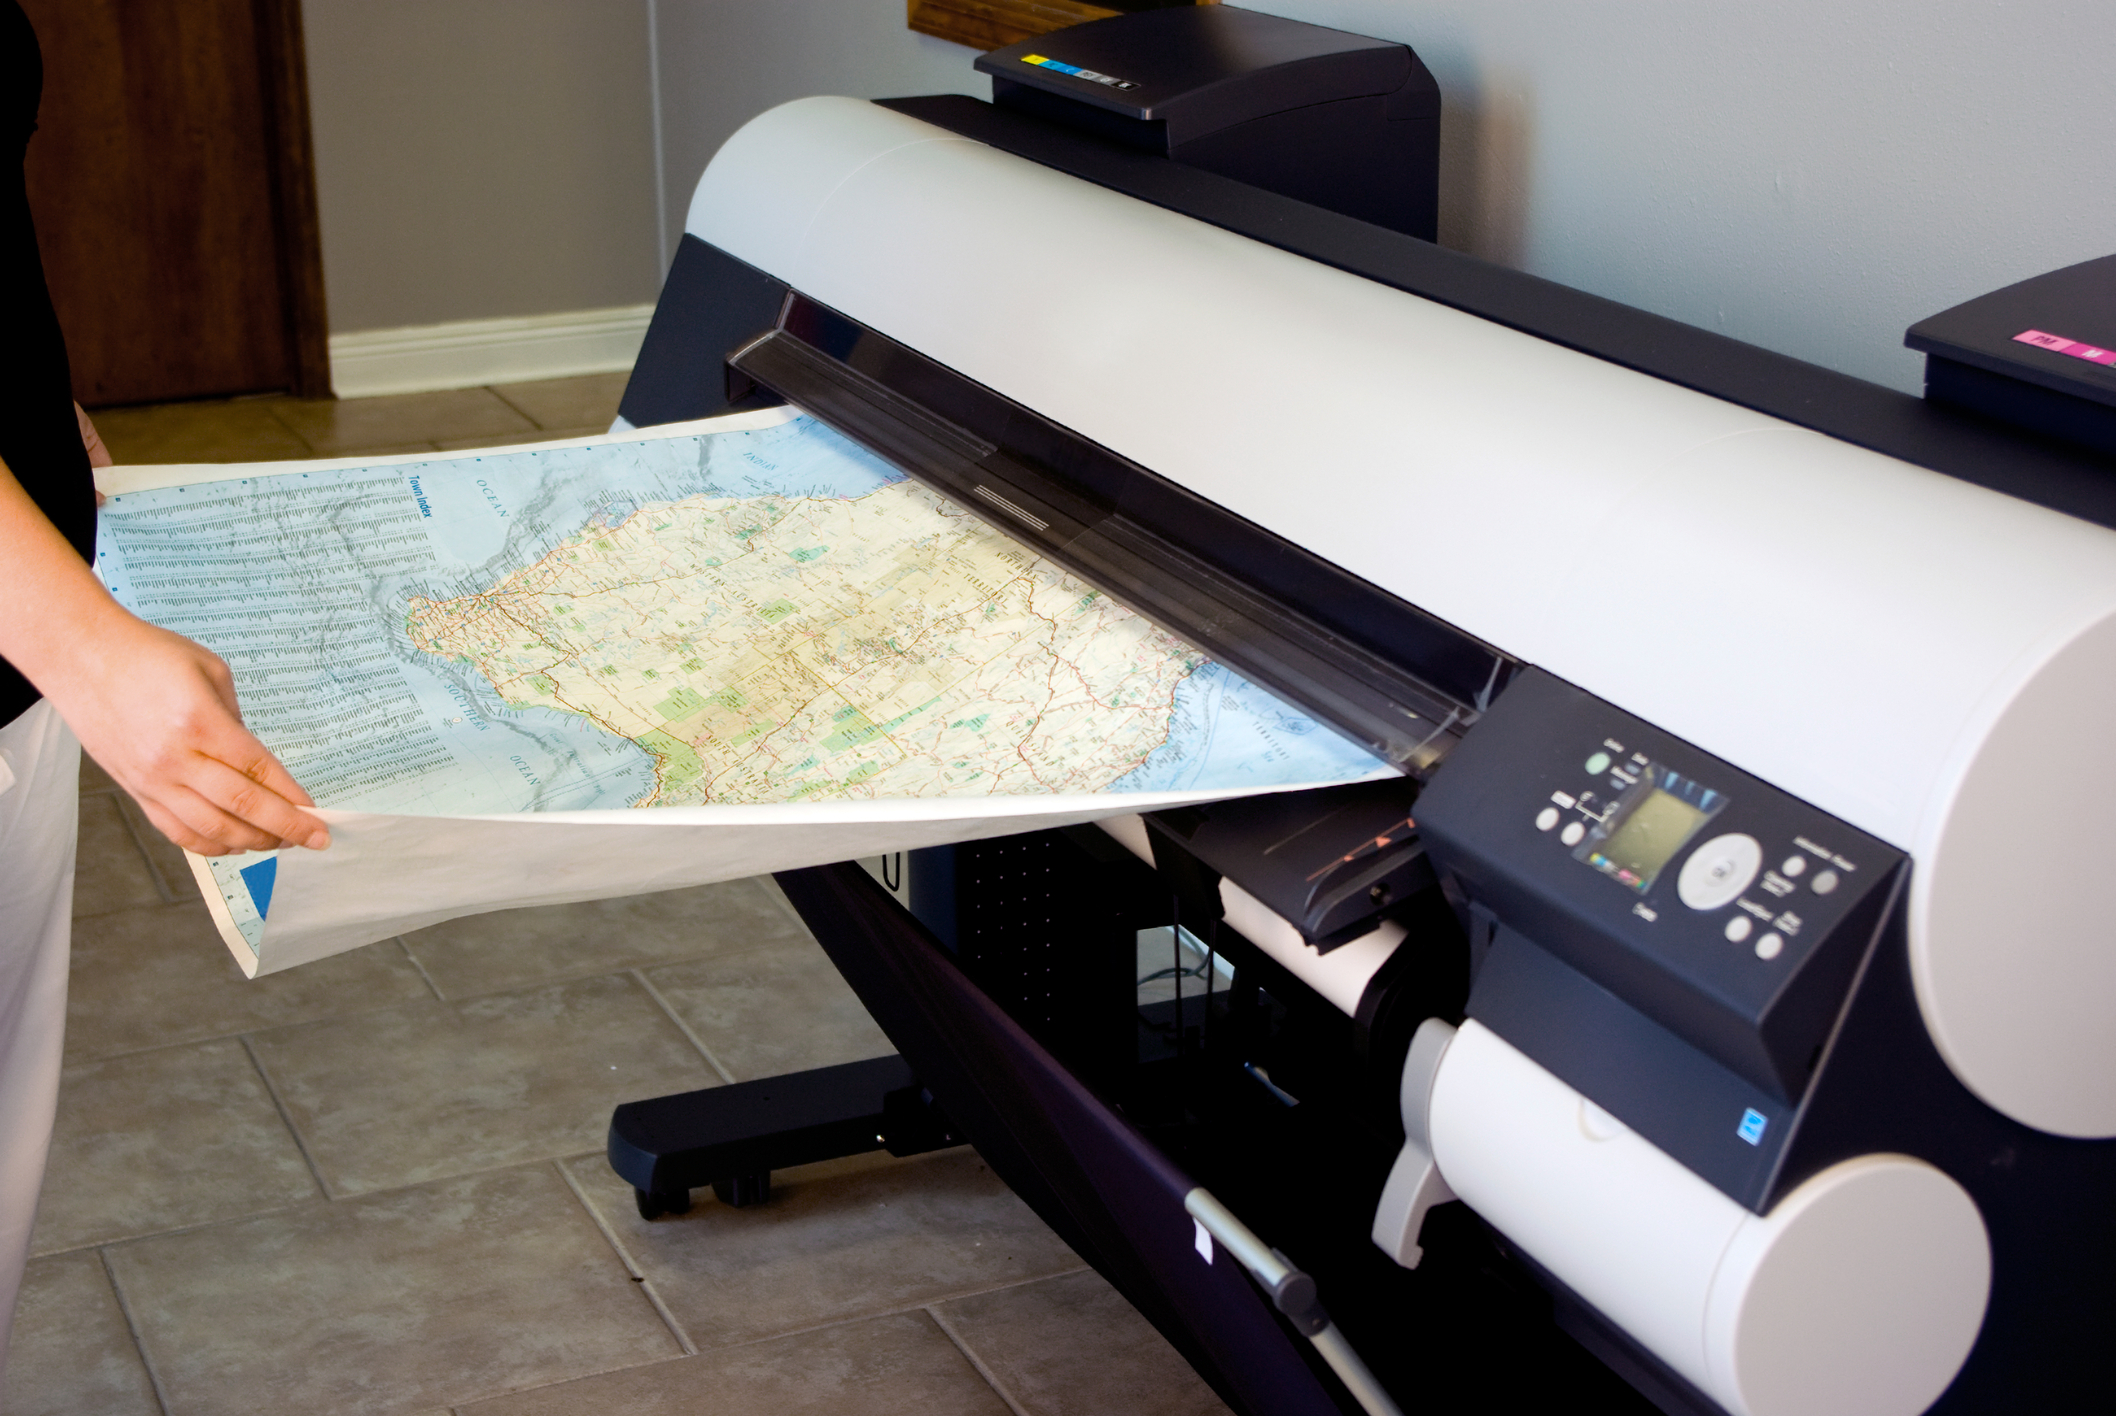 Comment choisir le papier pour traceur (imprimante grand format